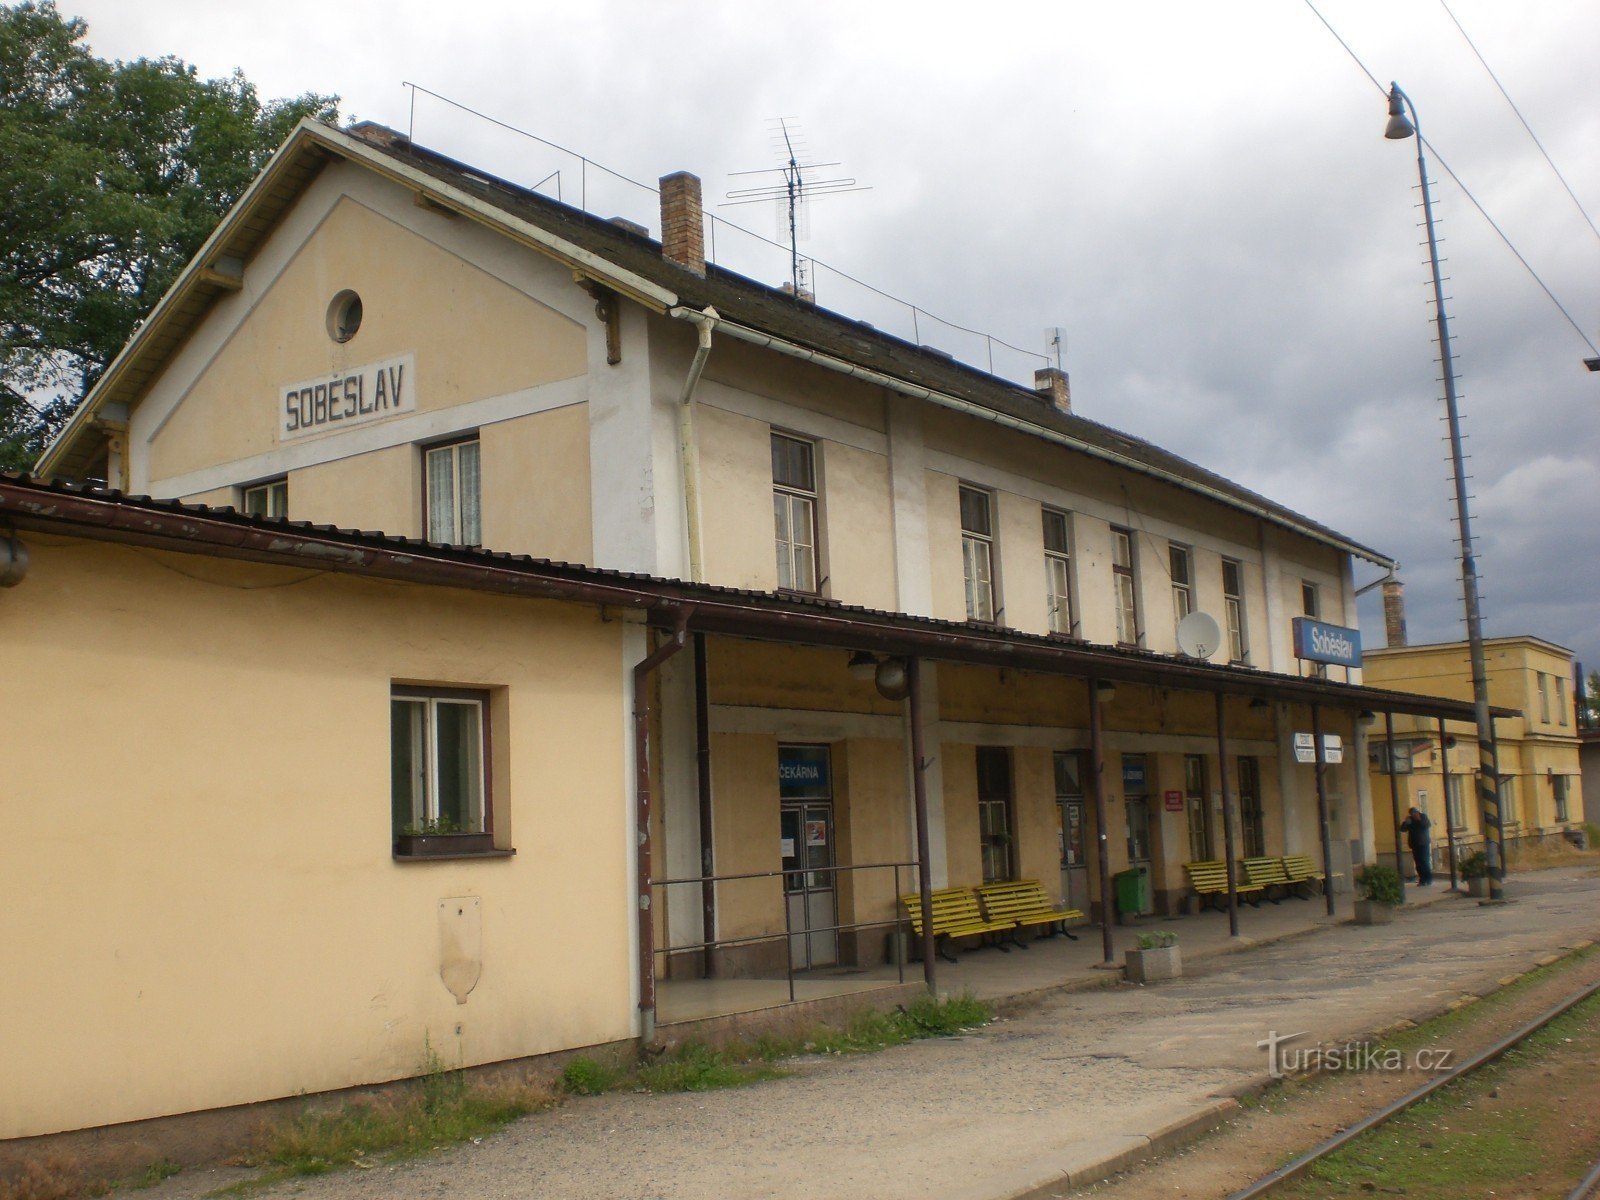 Soběslav - stazione ferroviaria